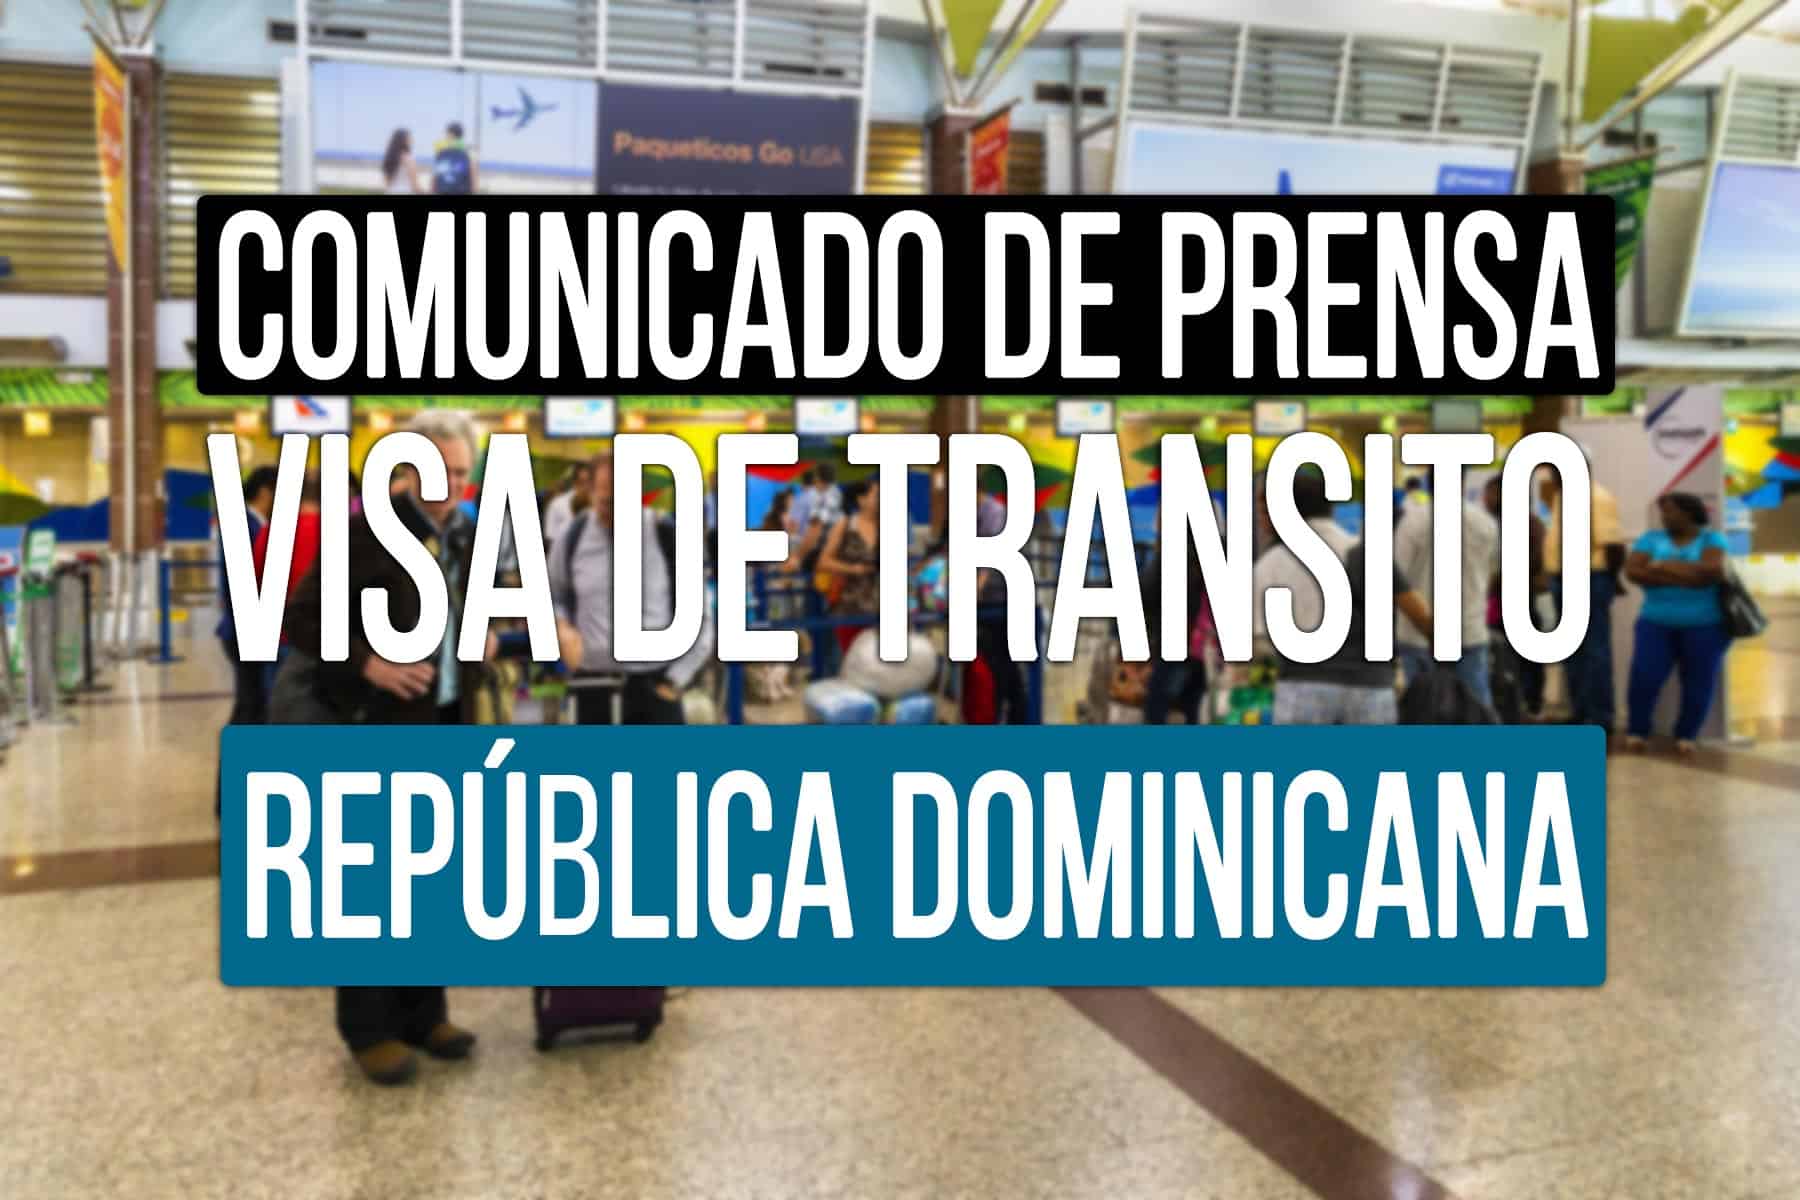 fecha de entrada en vigor de requisitos para cubanos visa de transito republica dominicana